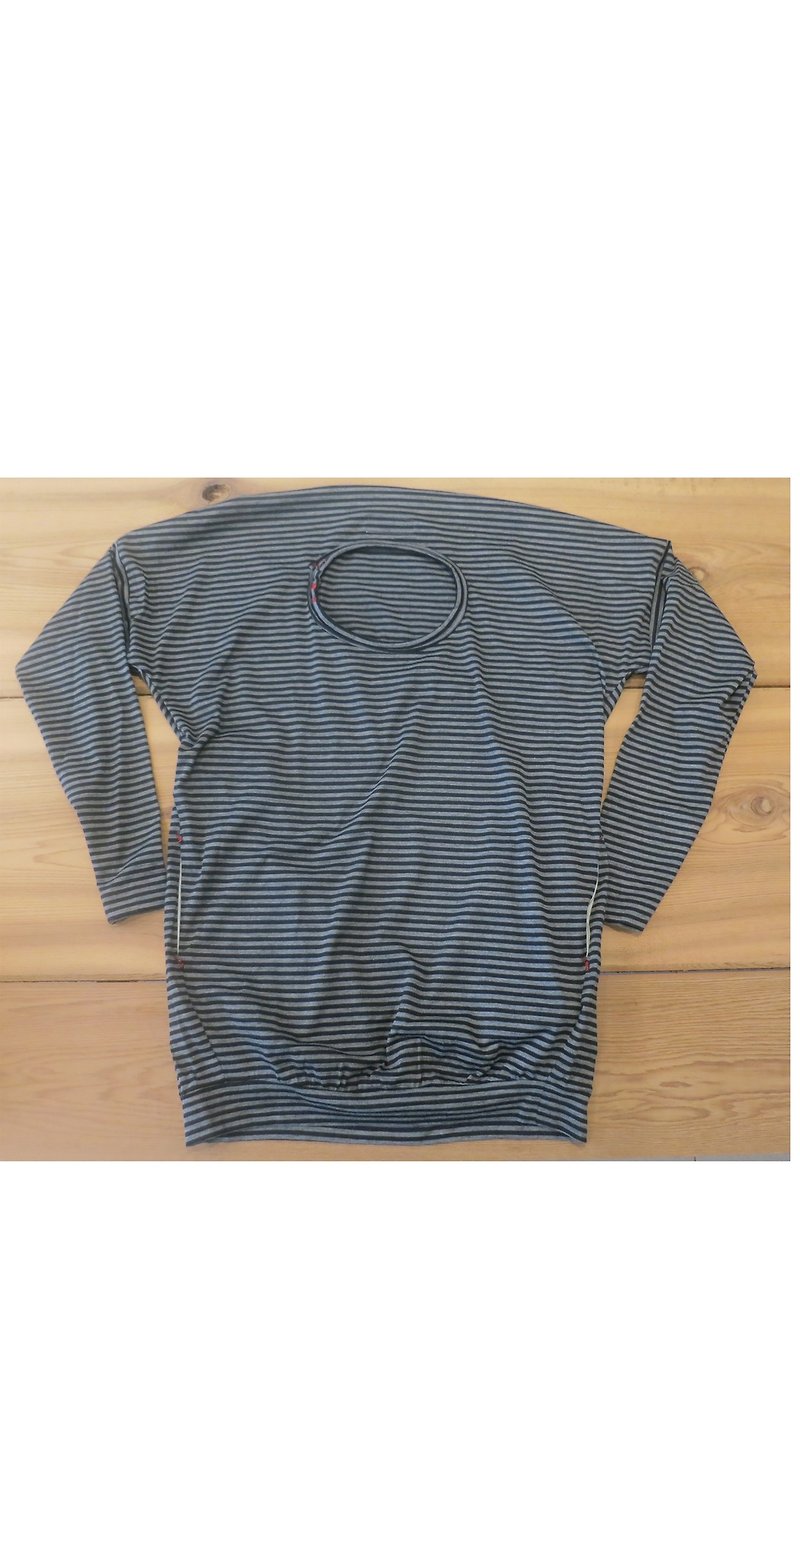 g1309 shape striped shirt - Women's Tops - Other Materials Green